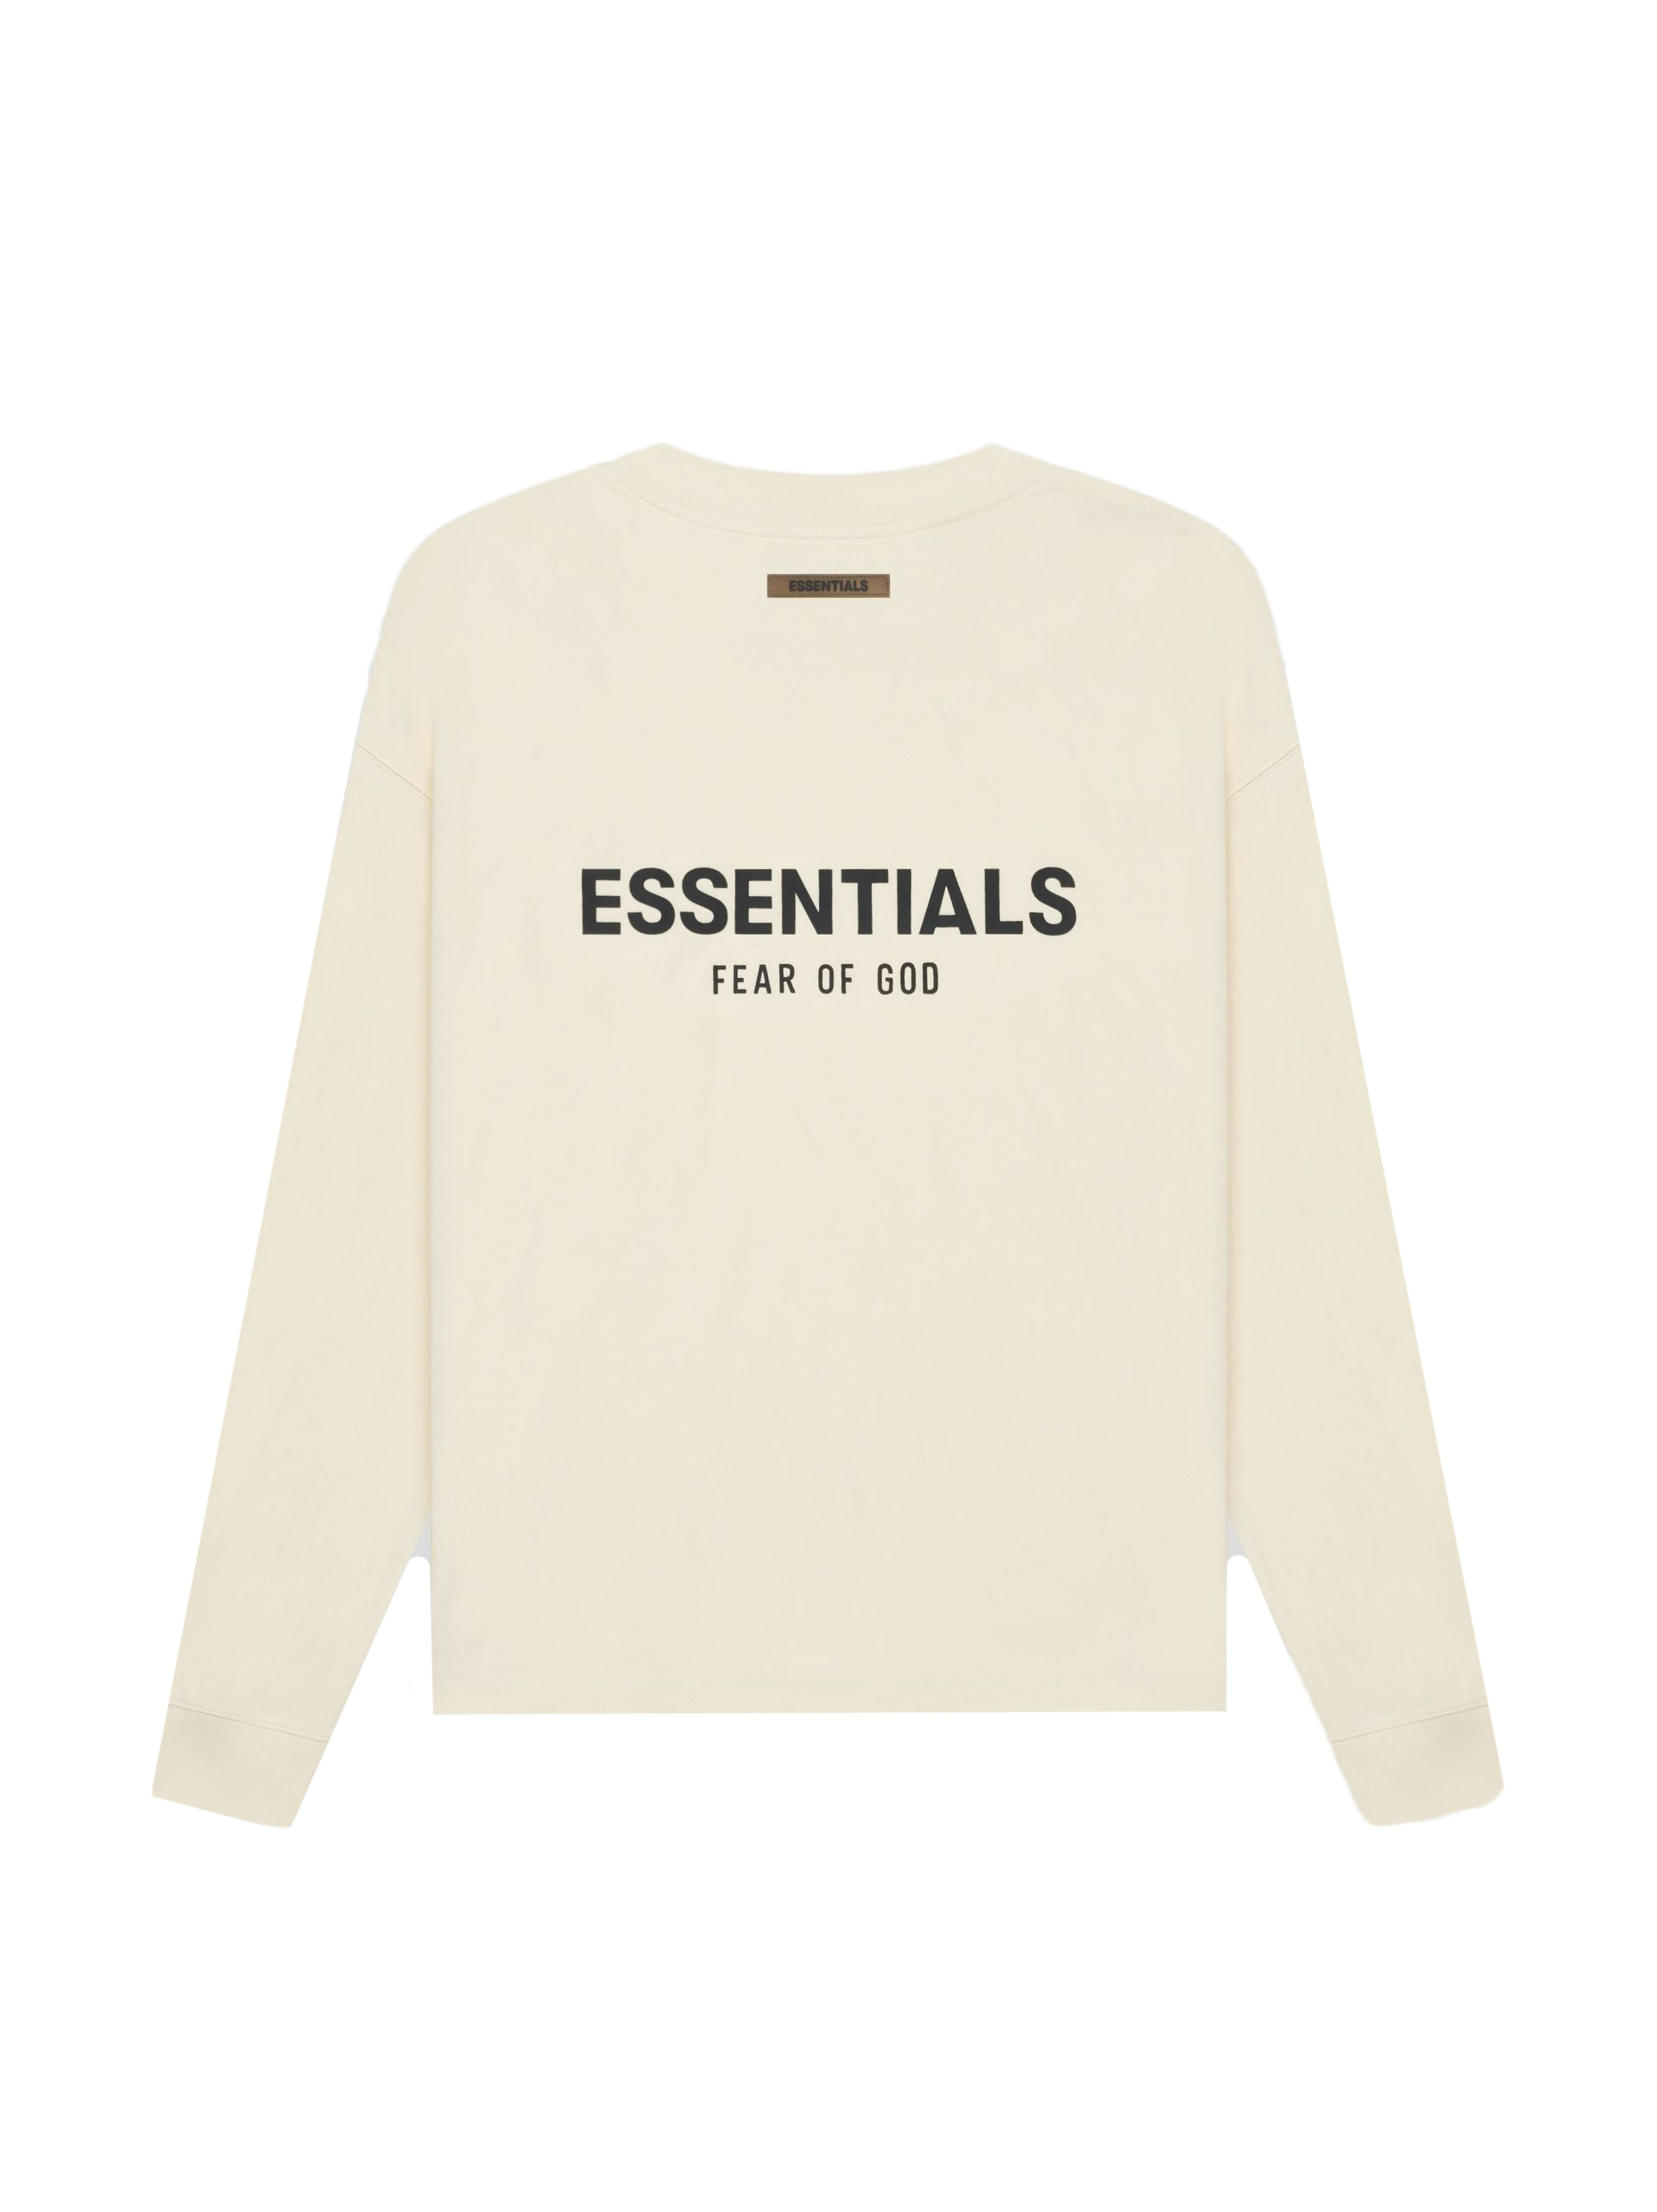 Fear of God Essentials Long Sleeve T-shirt Cream/Buttercream